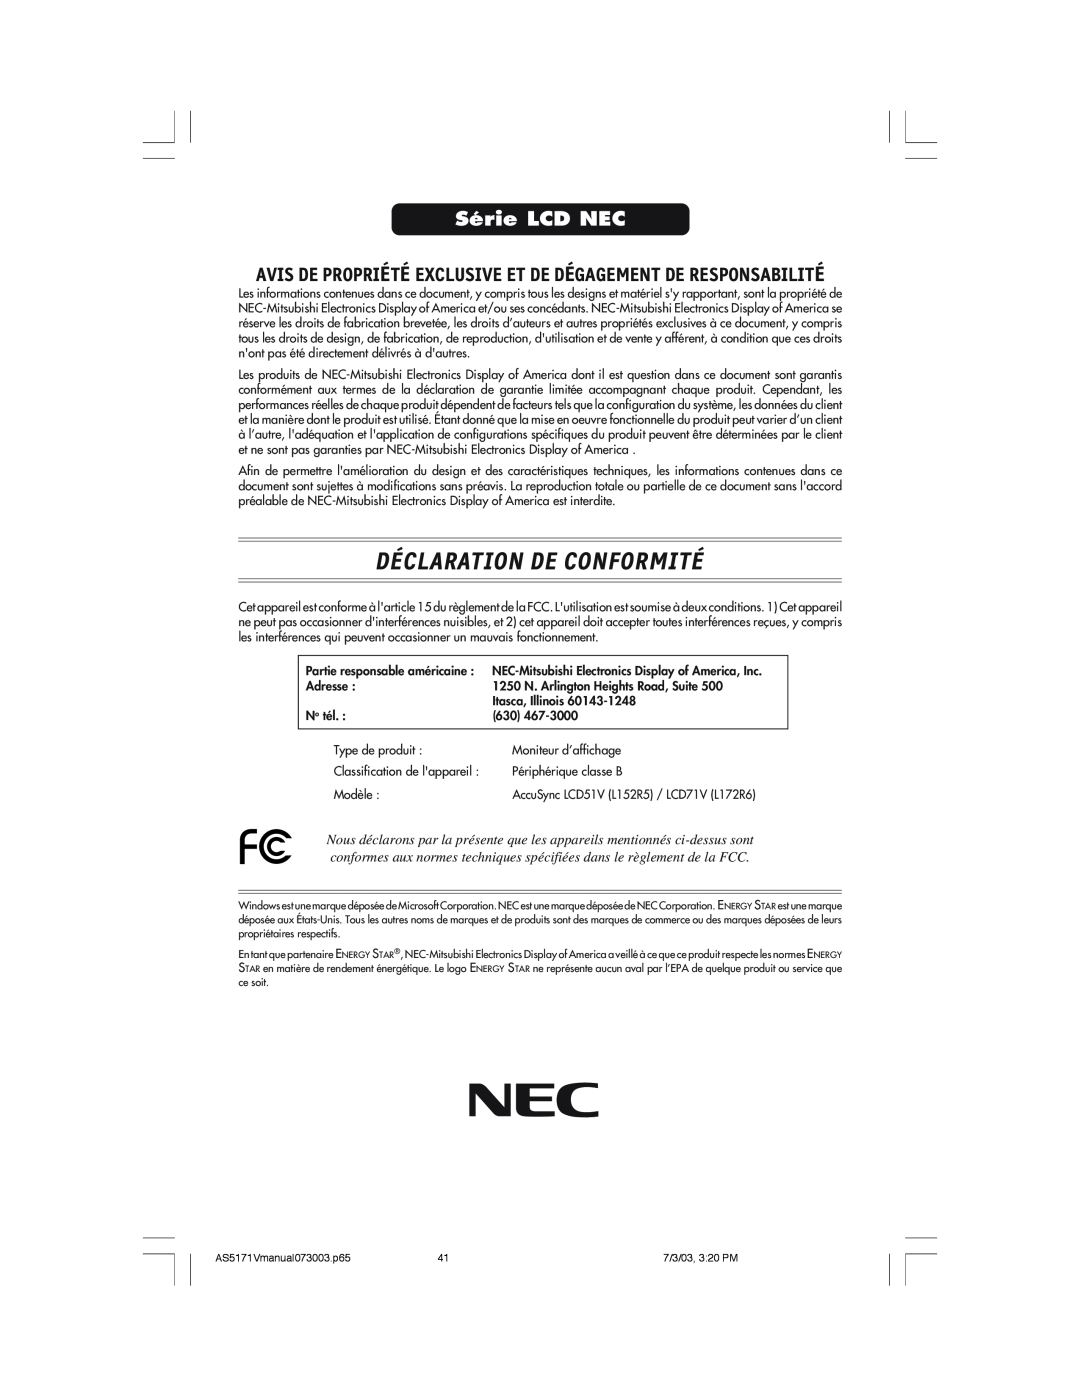 NEC LCD71V manual Déclaration De Conformité, Série LCD NEC, Avis De Propriété Exclusive Et De Dégagement De Responsabilité 